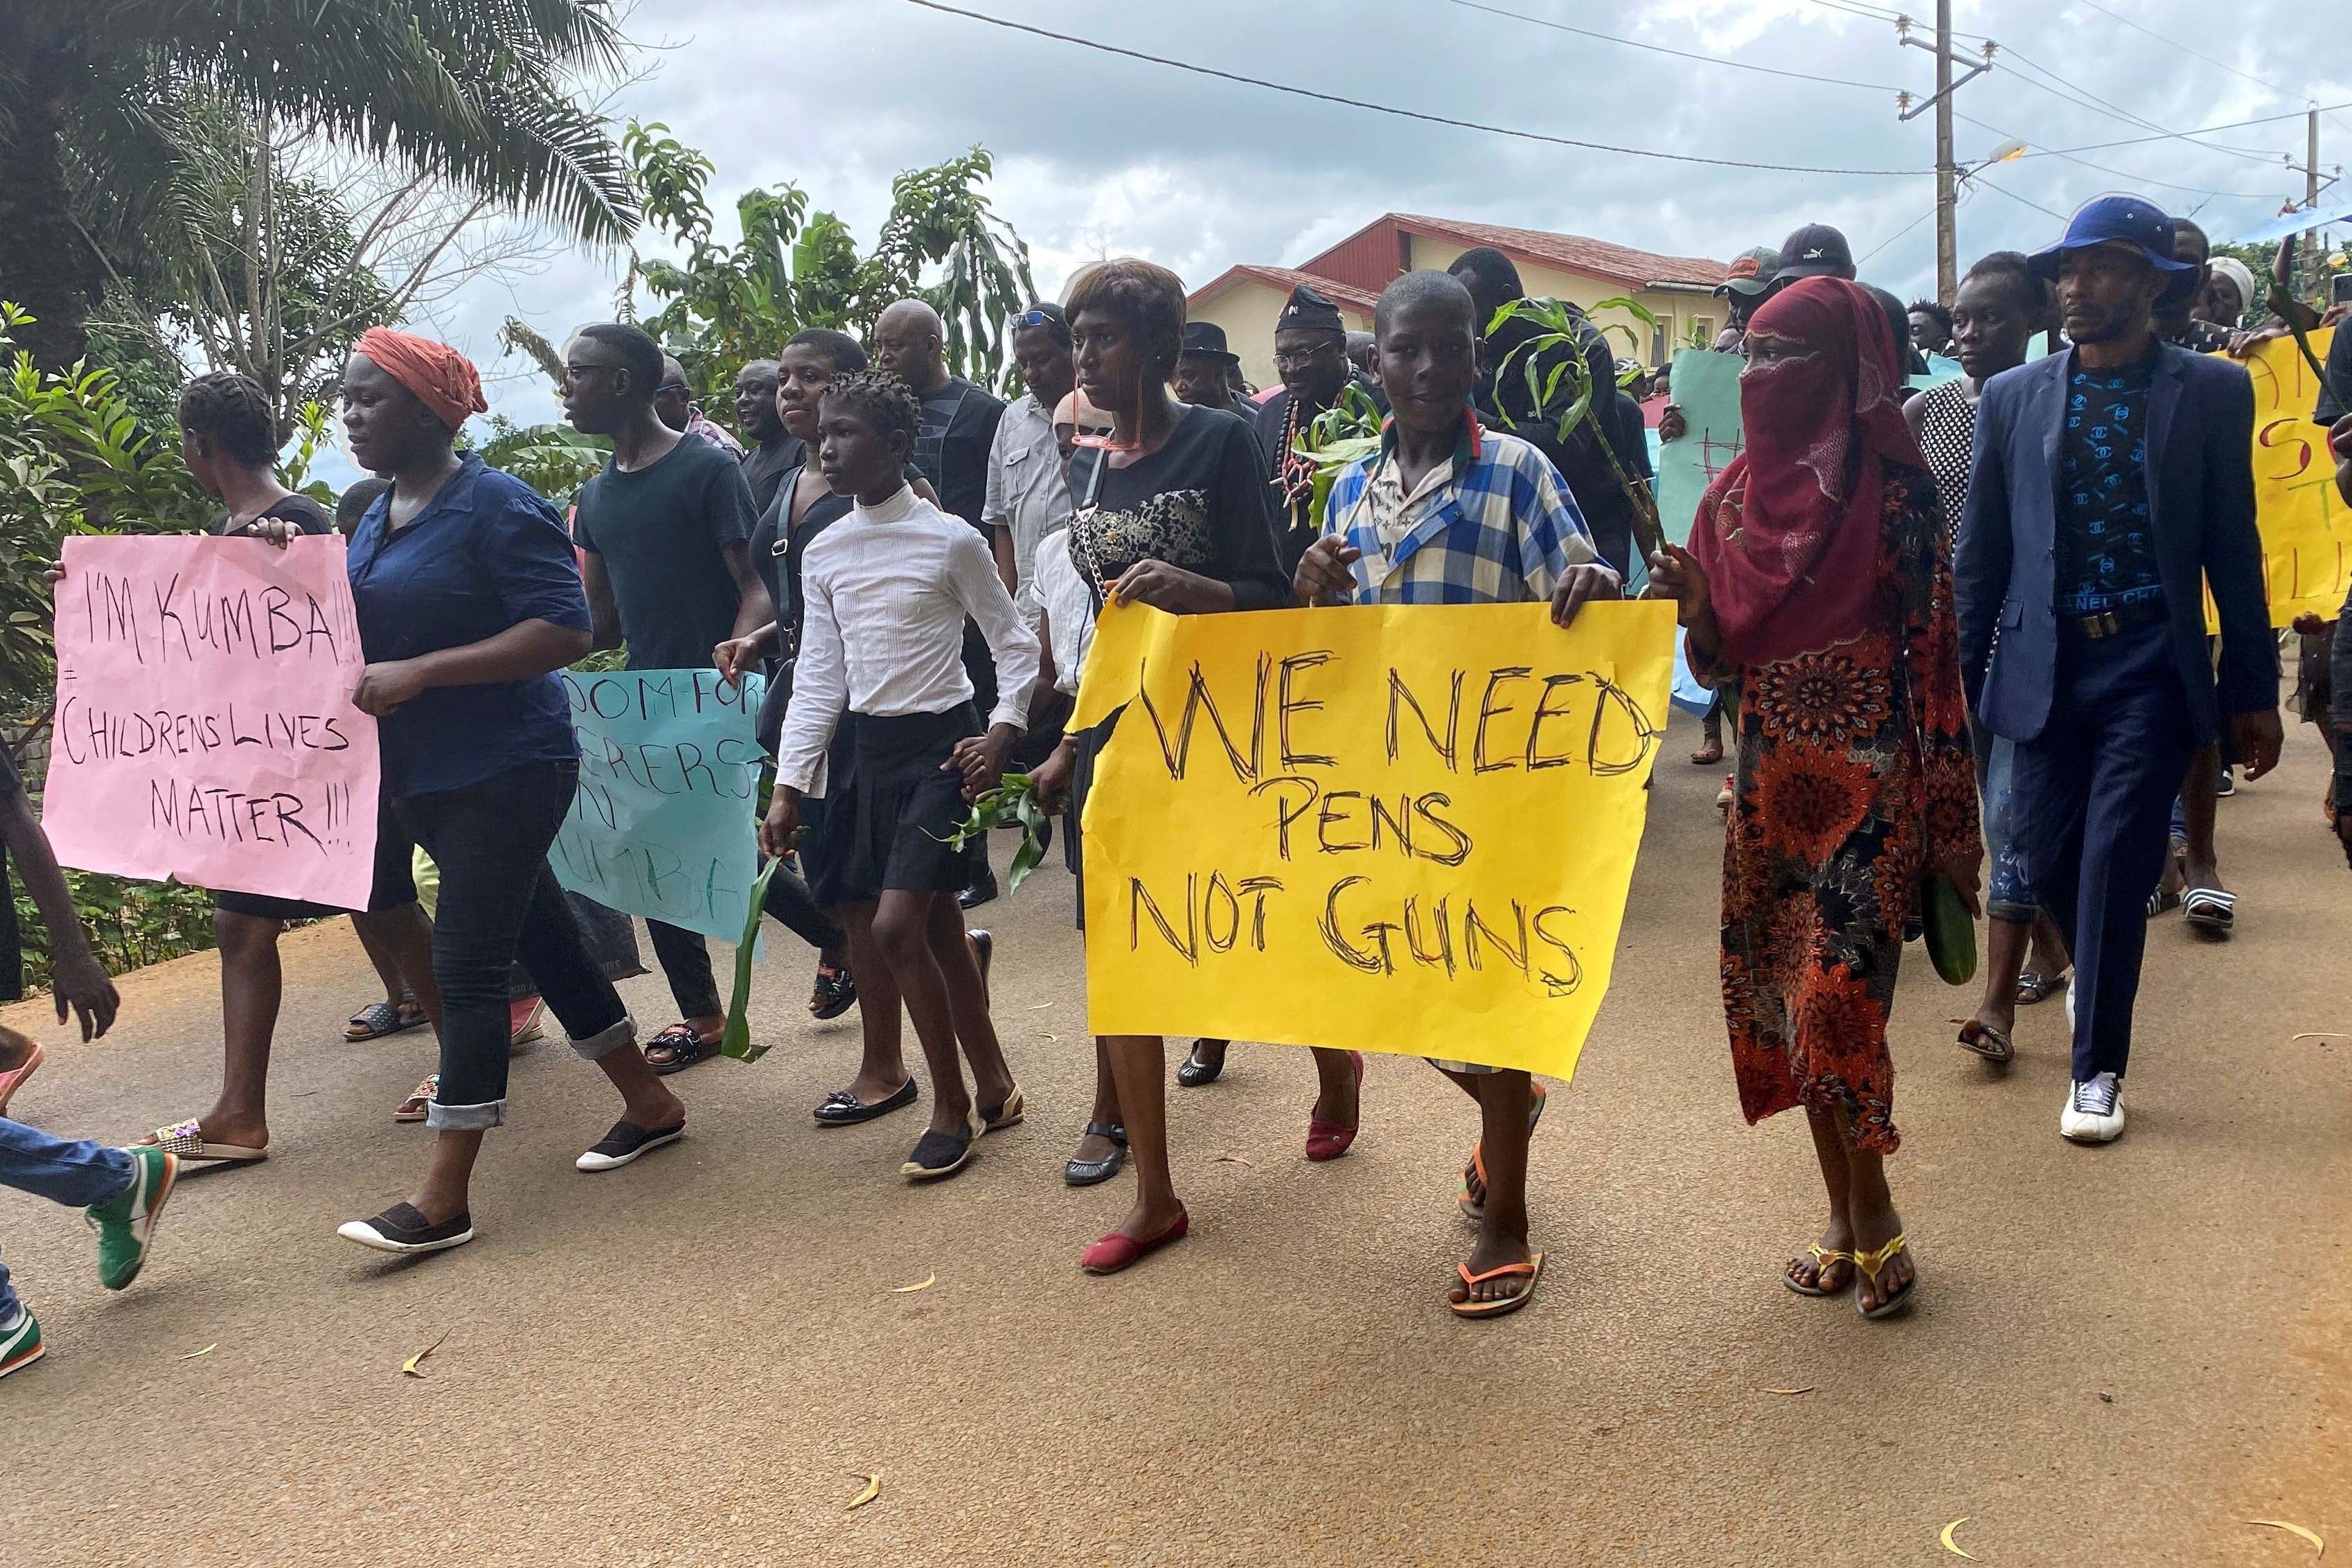 Kamerun: Serangan Separatis Bersenjata terhadap Pendidikan